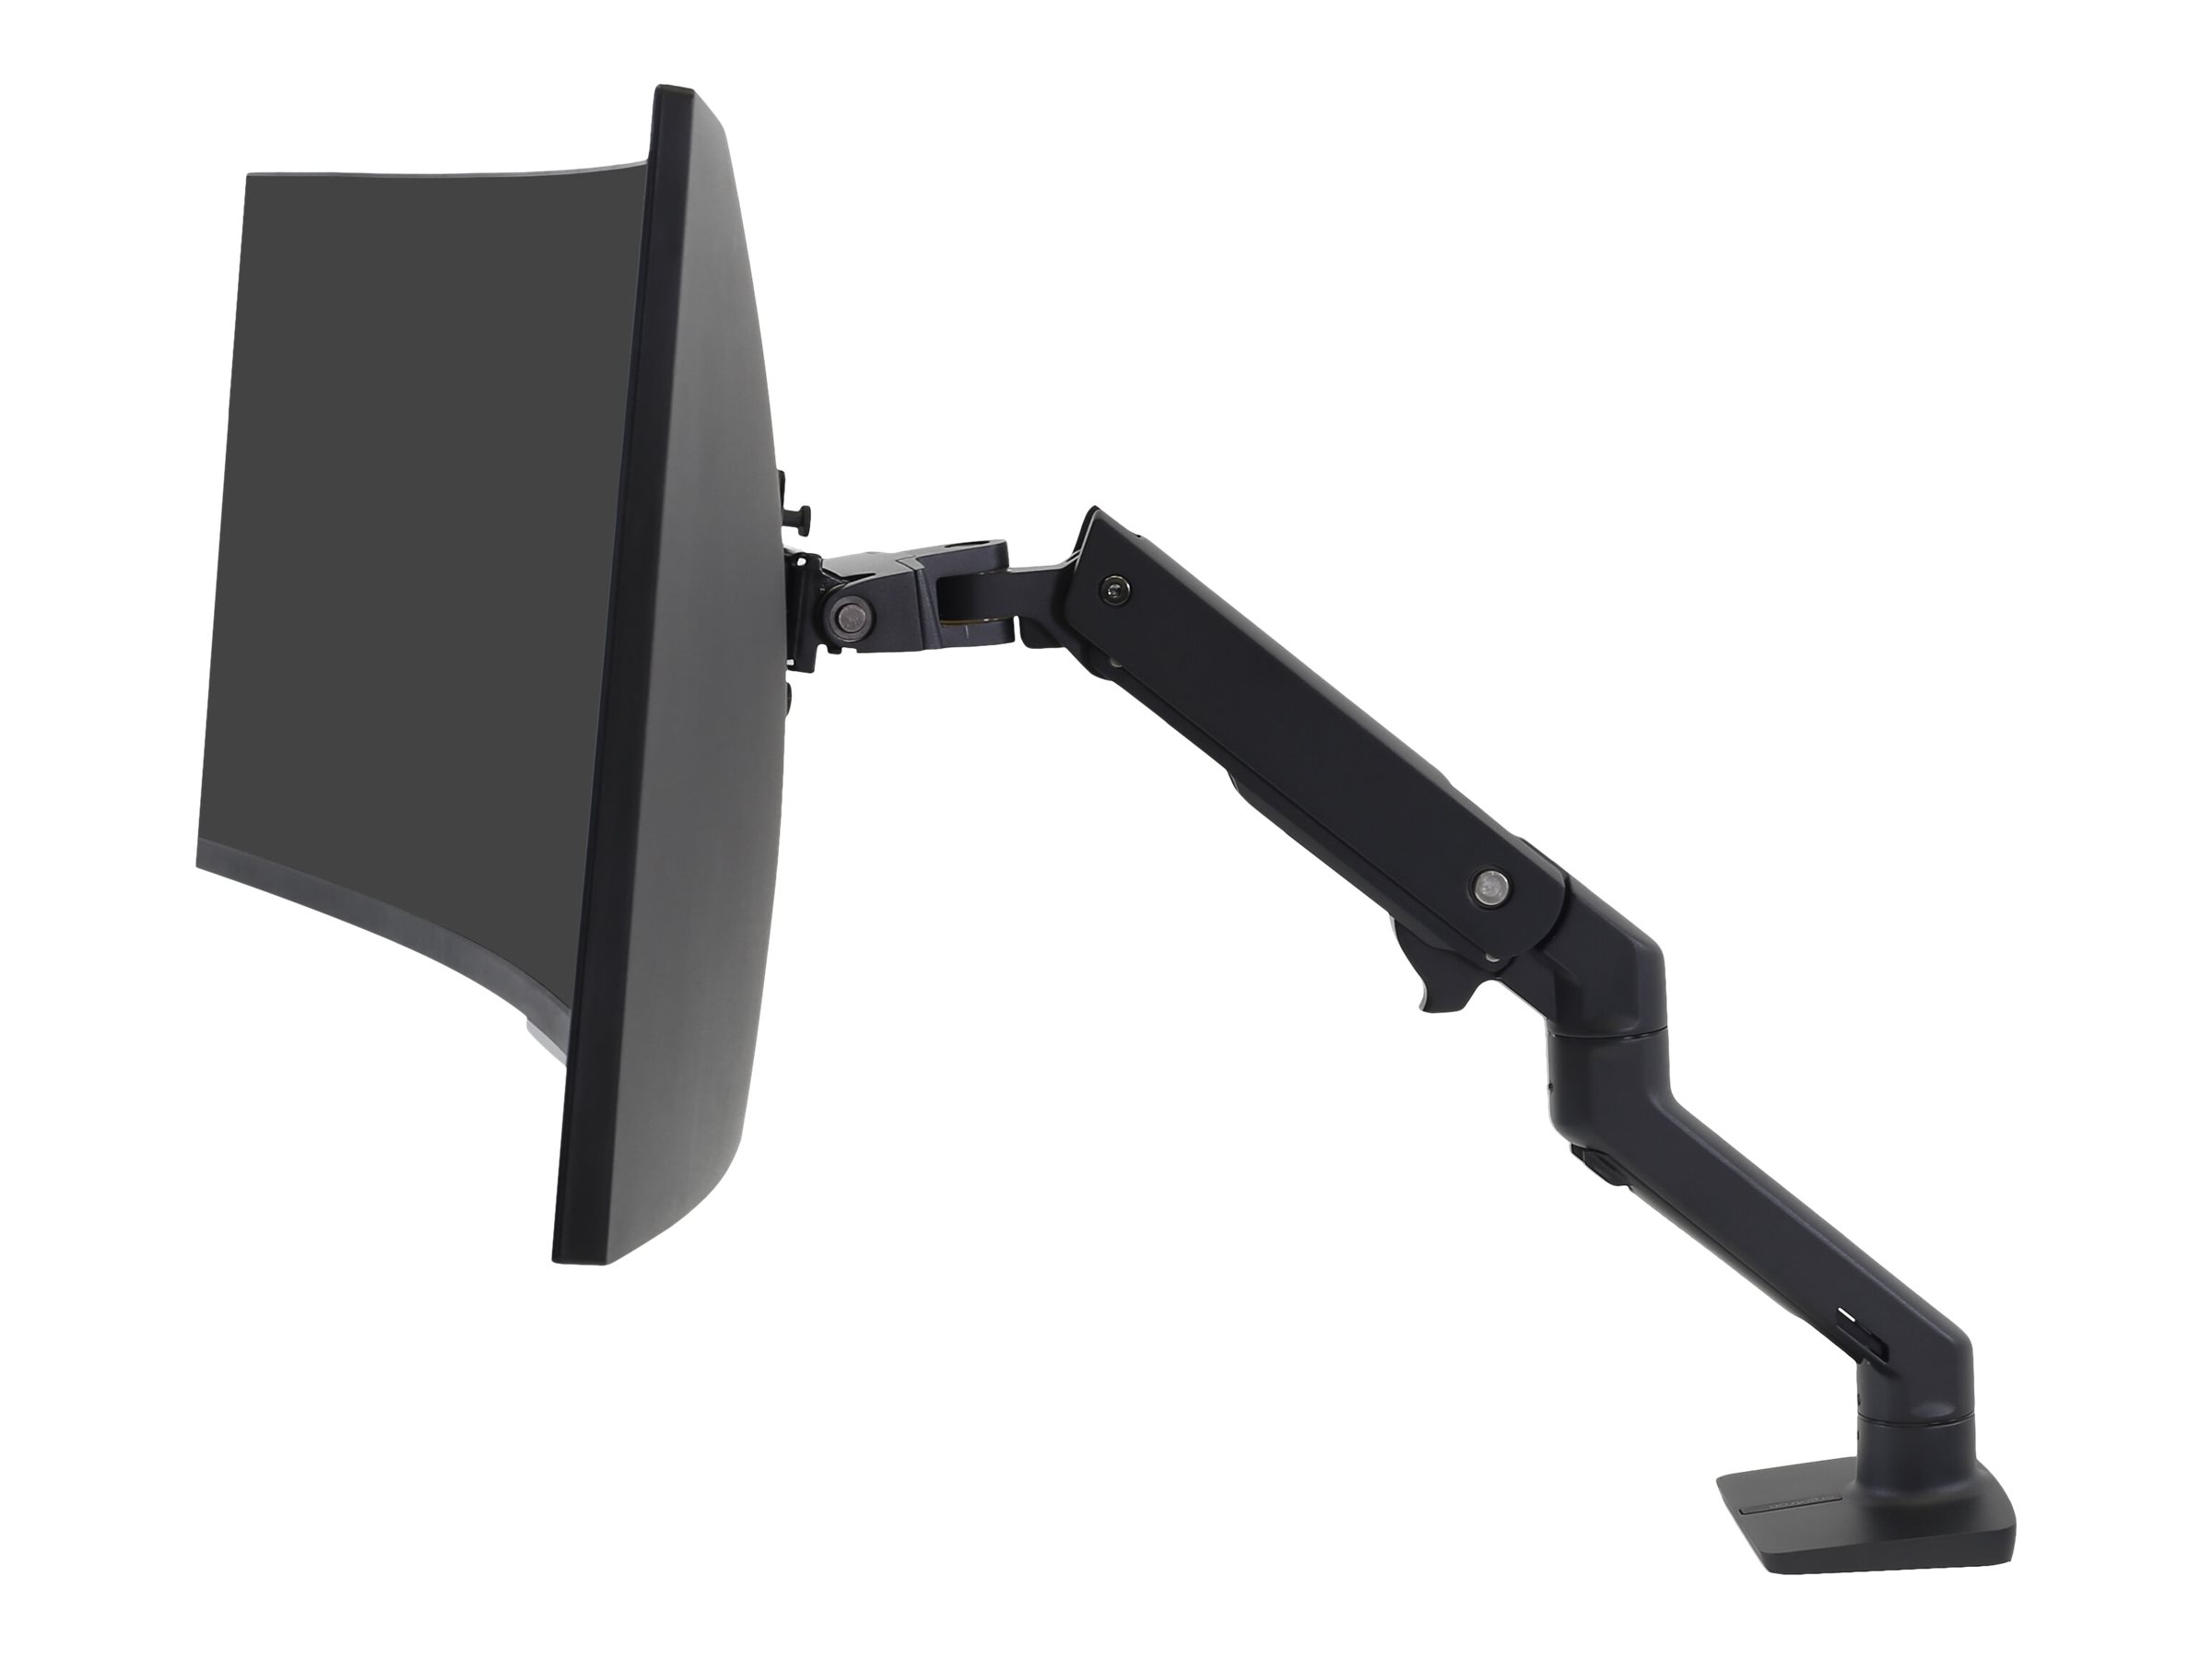 Ergotron HX - Befestigungskit (Gelenkarm, Spannbefestigung für Tisch, Verlängerungsarm, Tischplattenbohrung, Pivot) - Patentierte Constant Force Technologie - für LCD-Display / Curved LCD-Display - mattschwarz - Bildschirmgröße: 124.5 cm (up to 49")